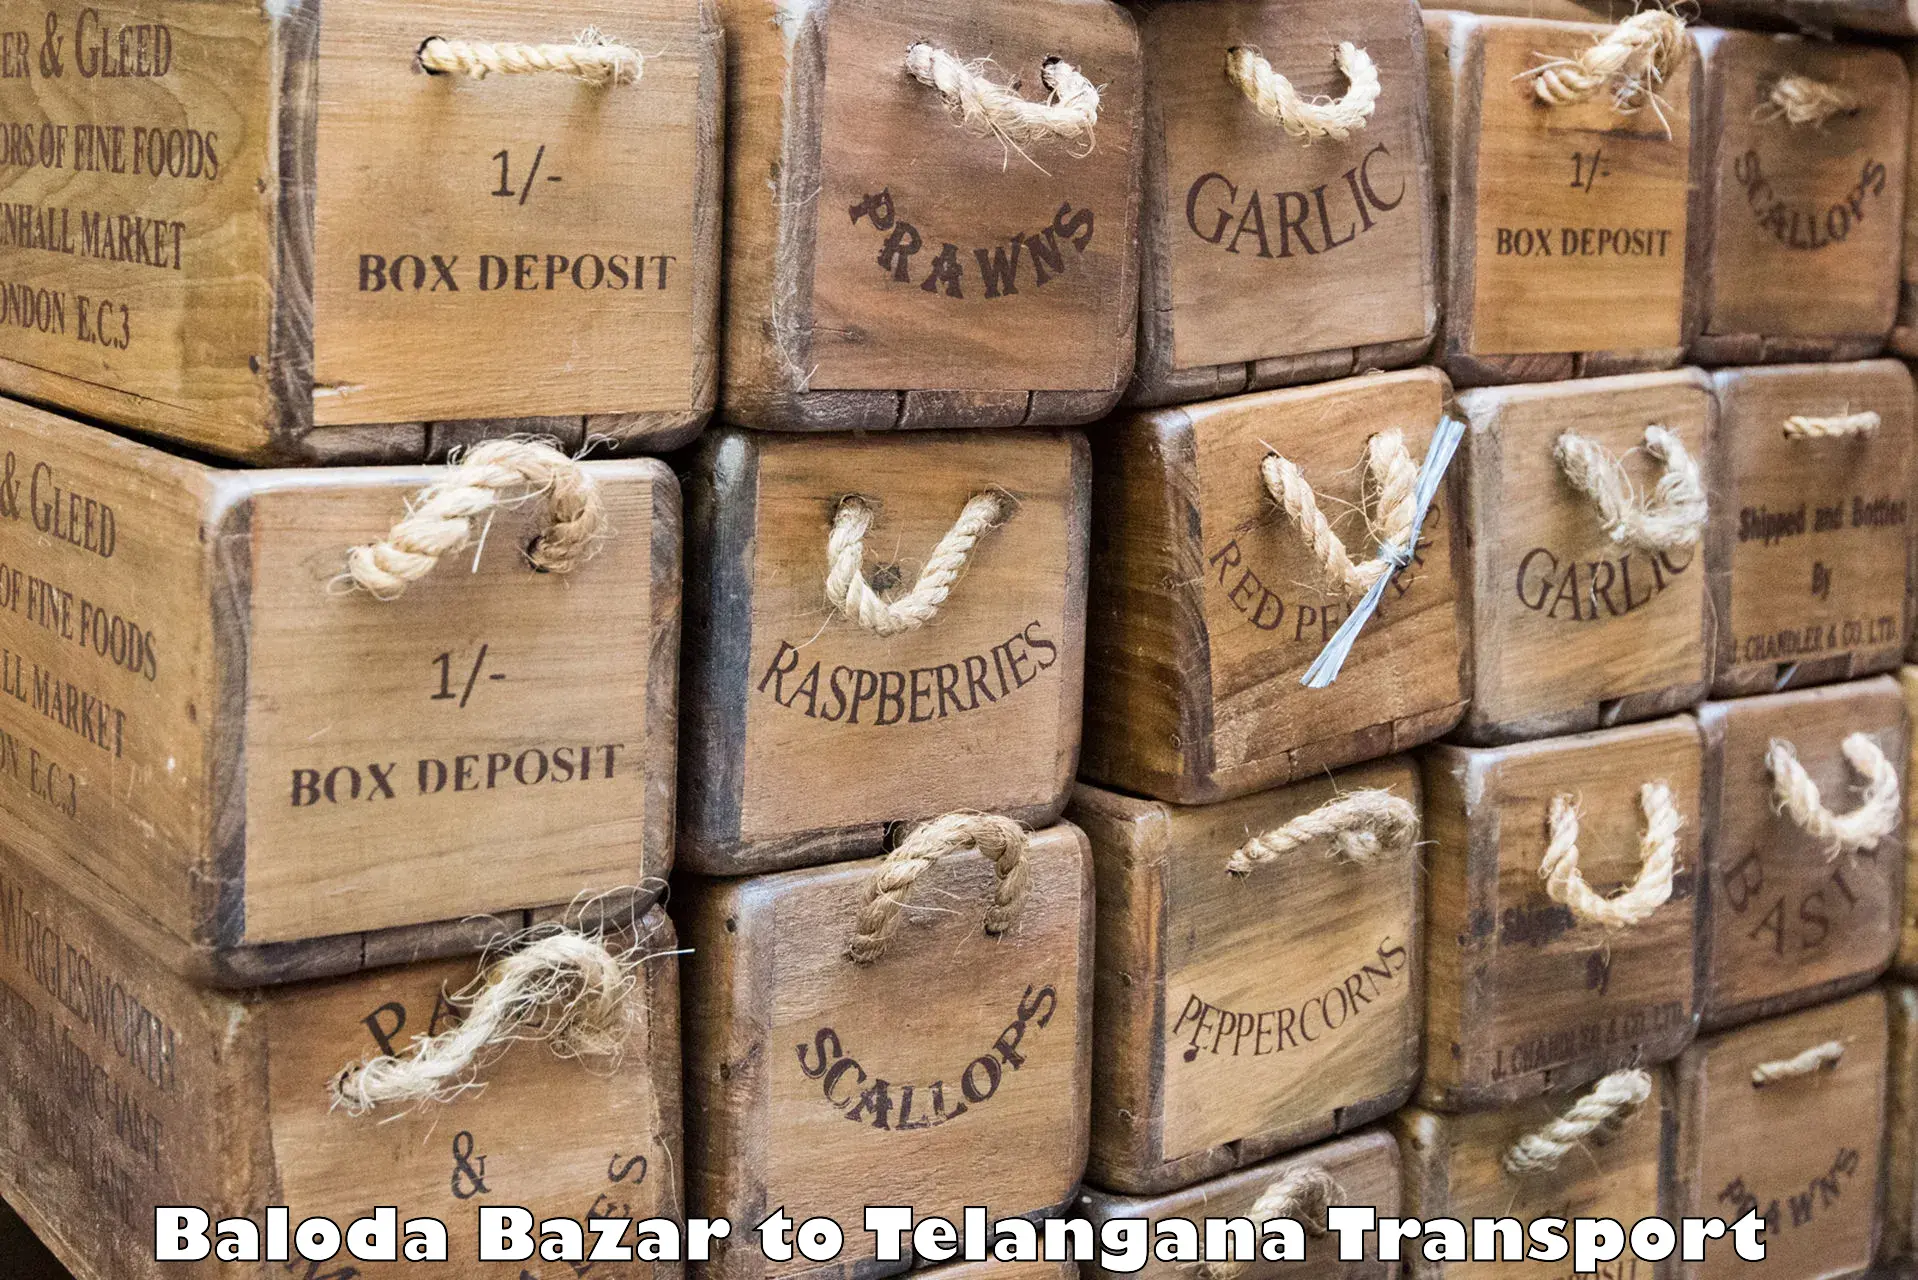 Nearest transport service Baloda Bazar to Wyra